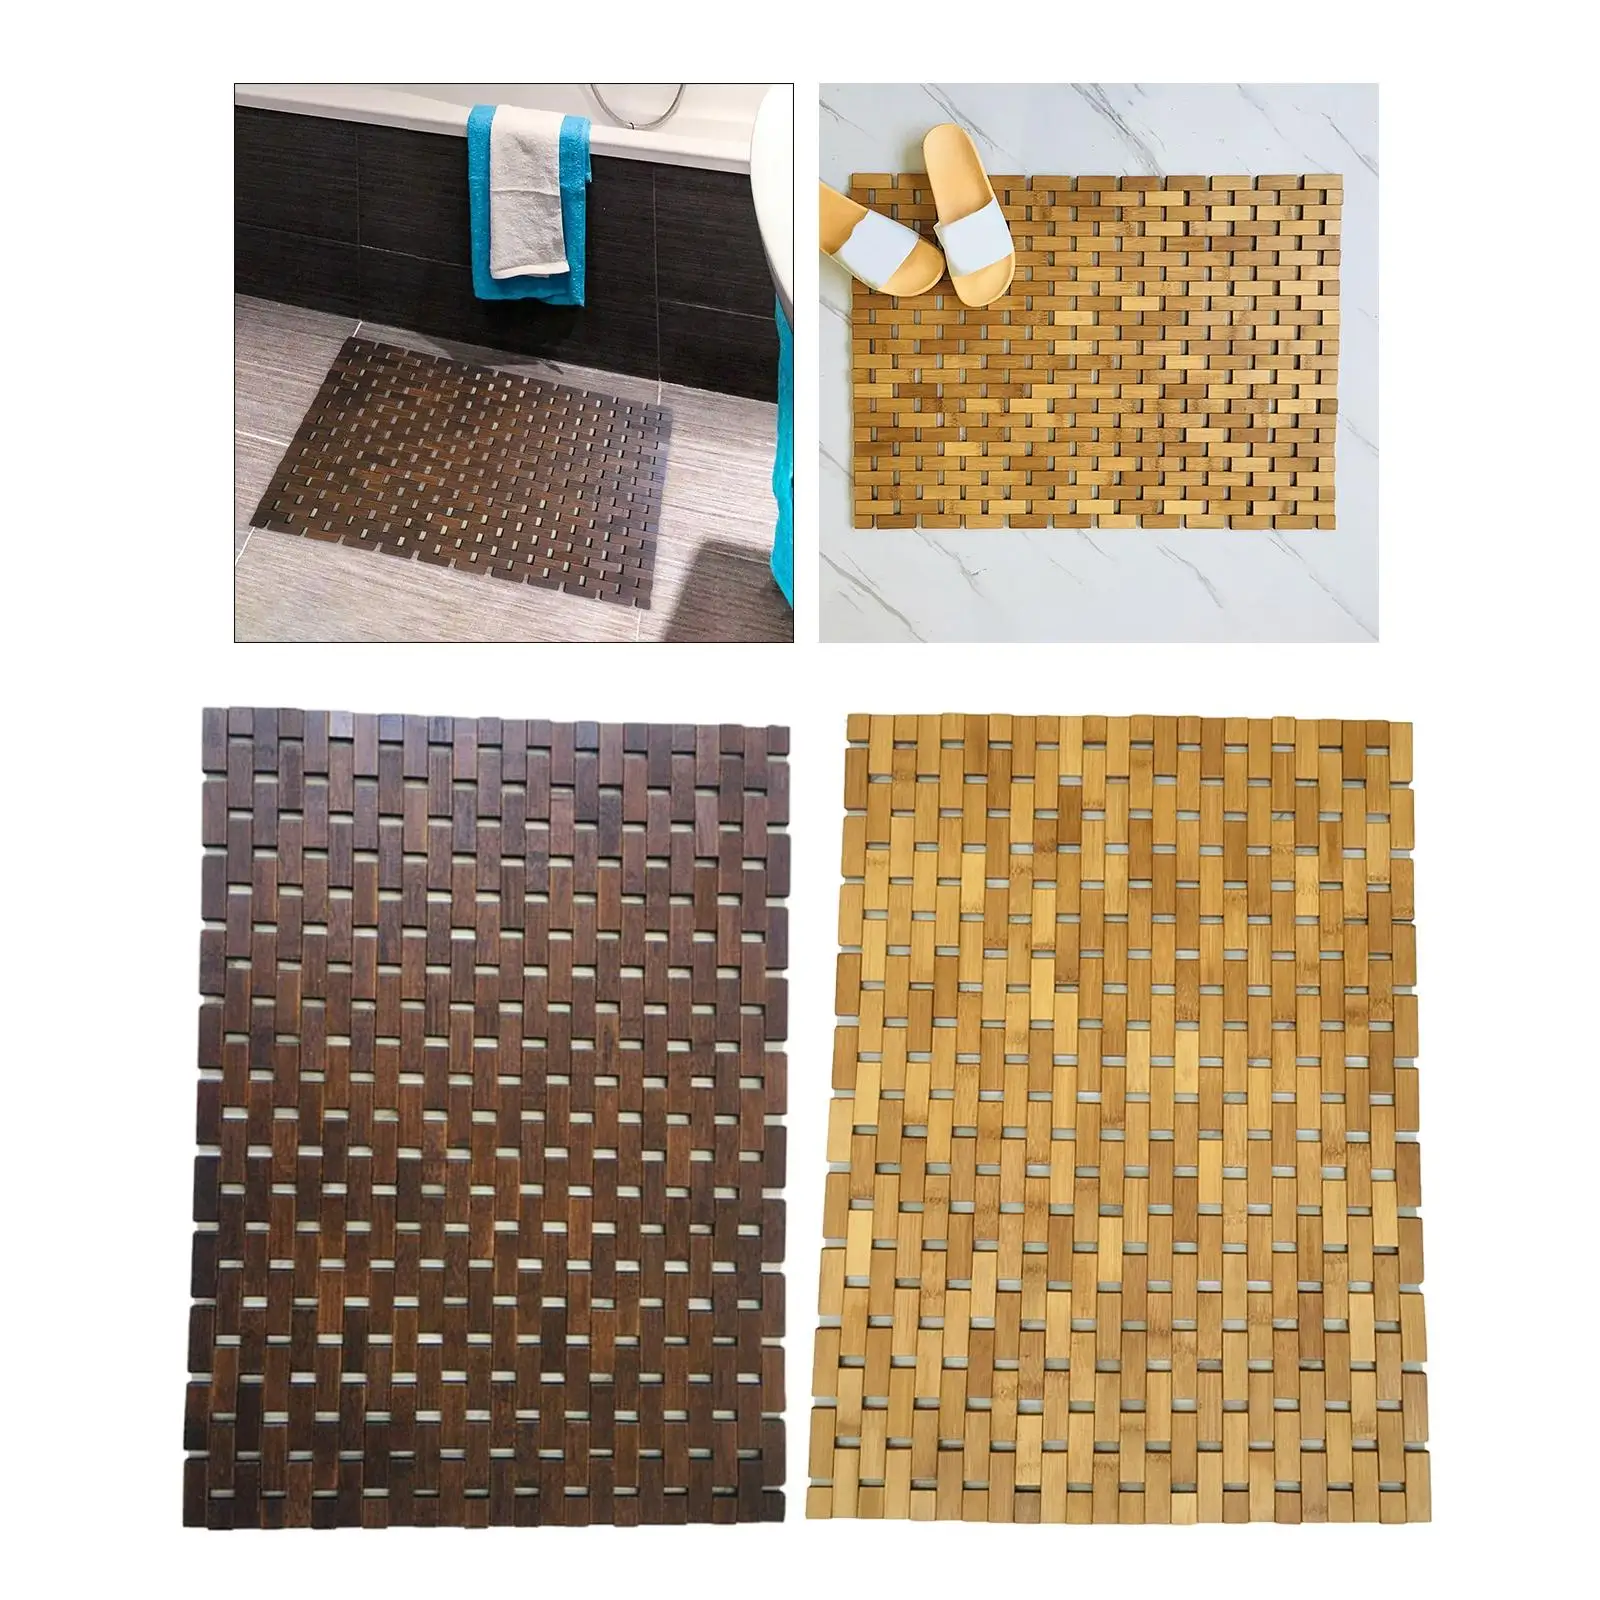 Bamboo Wood Bathroom Mat  chen Floor Rug for Bathtub Home Floor